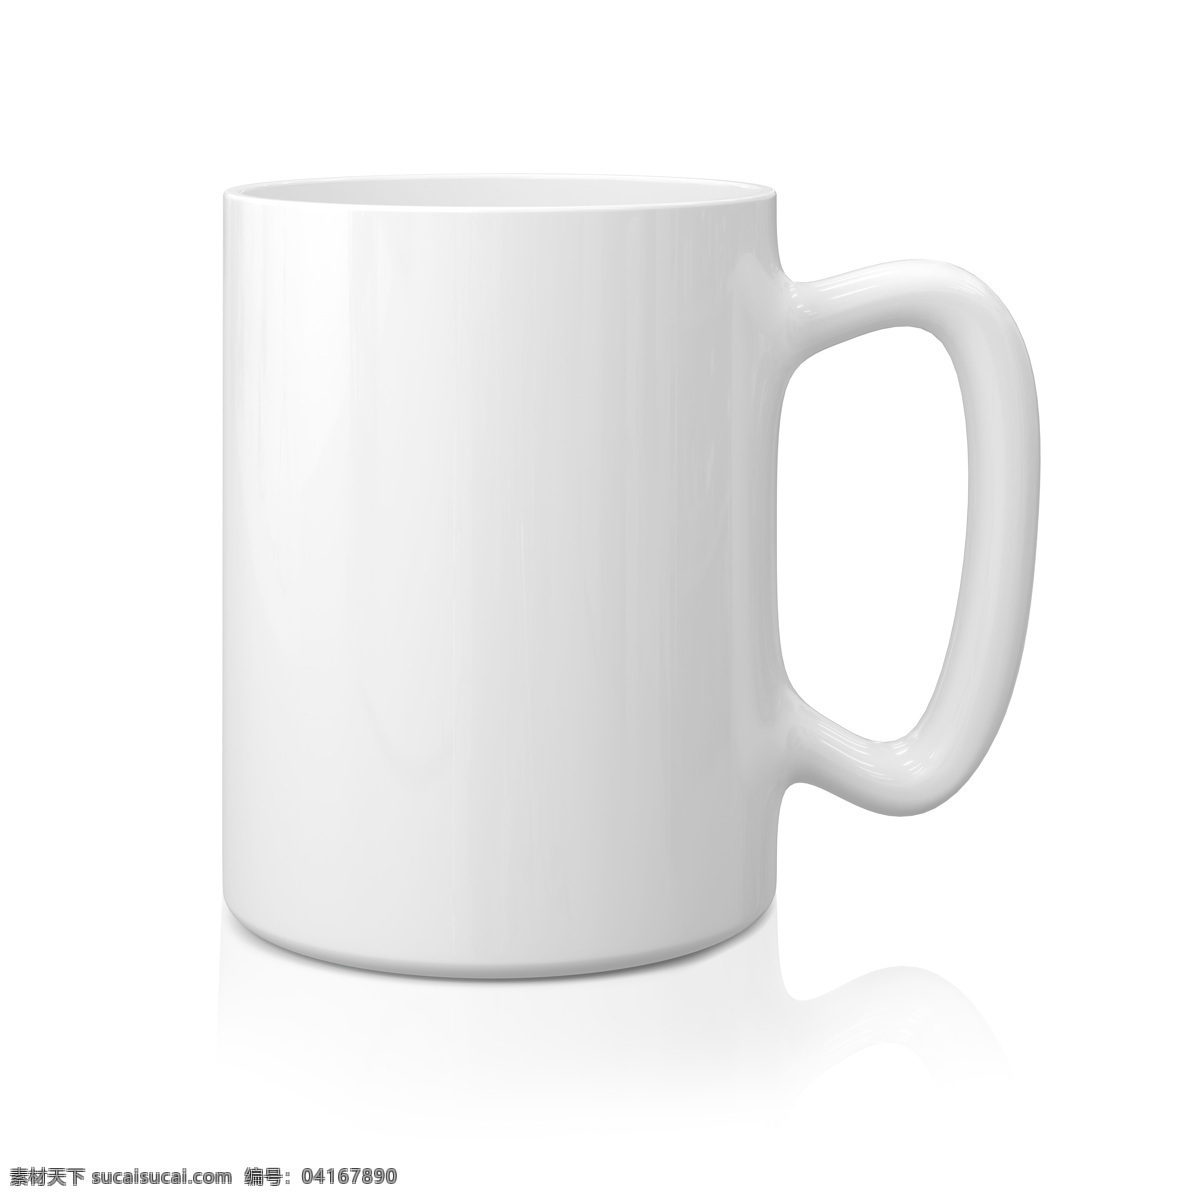 白色马克杯 马克杯 水杯 杯子 餐具 3d设计